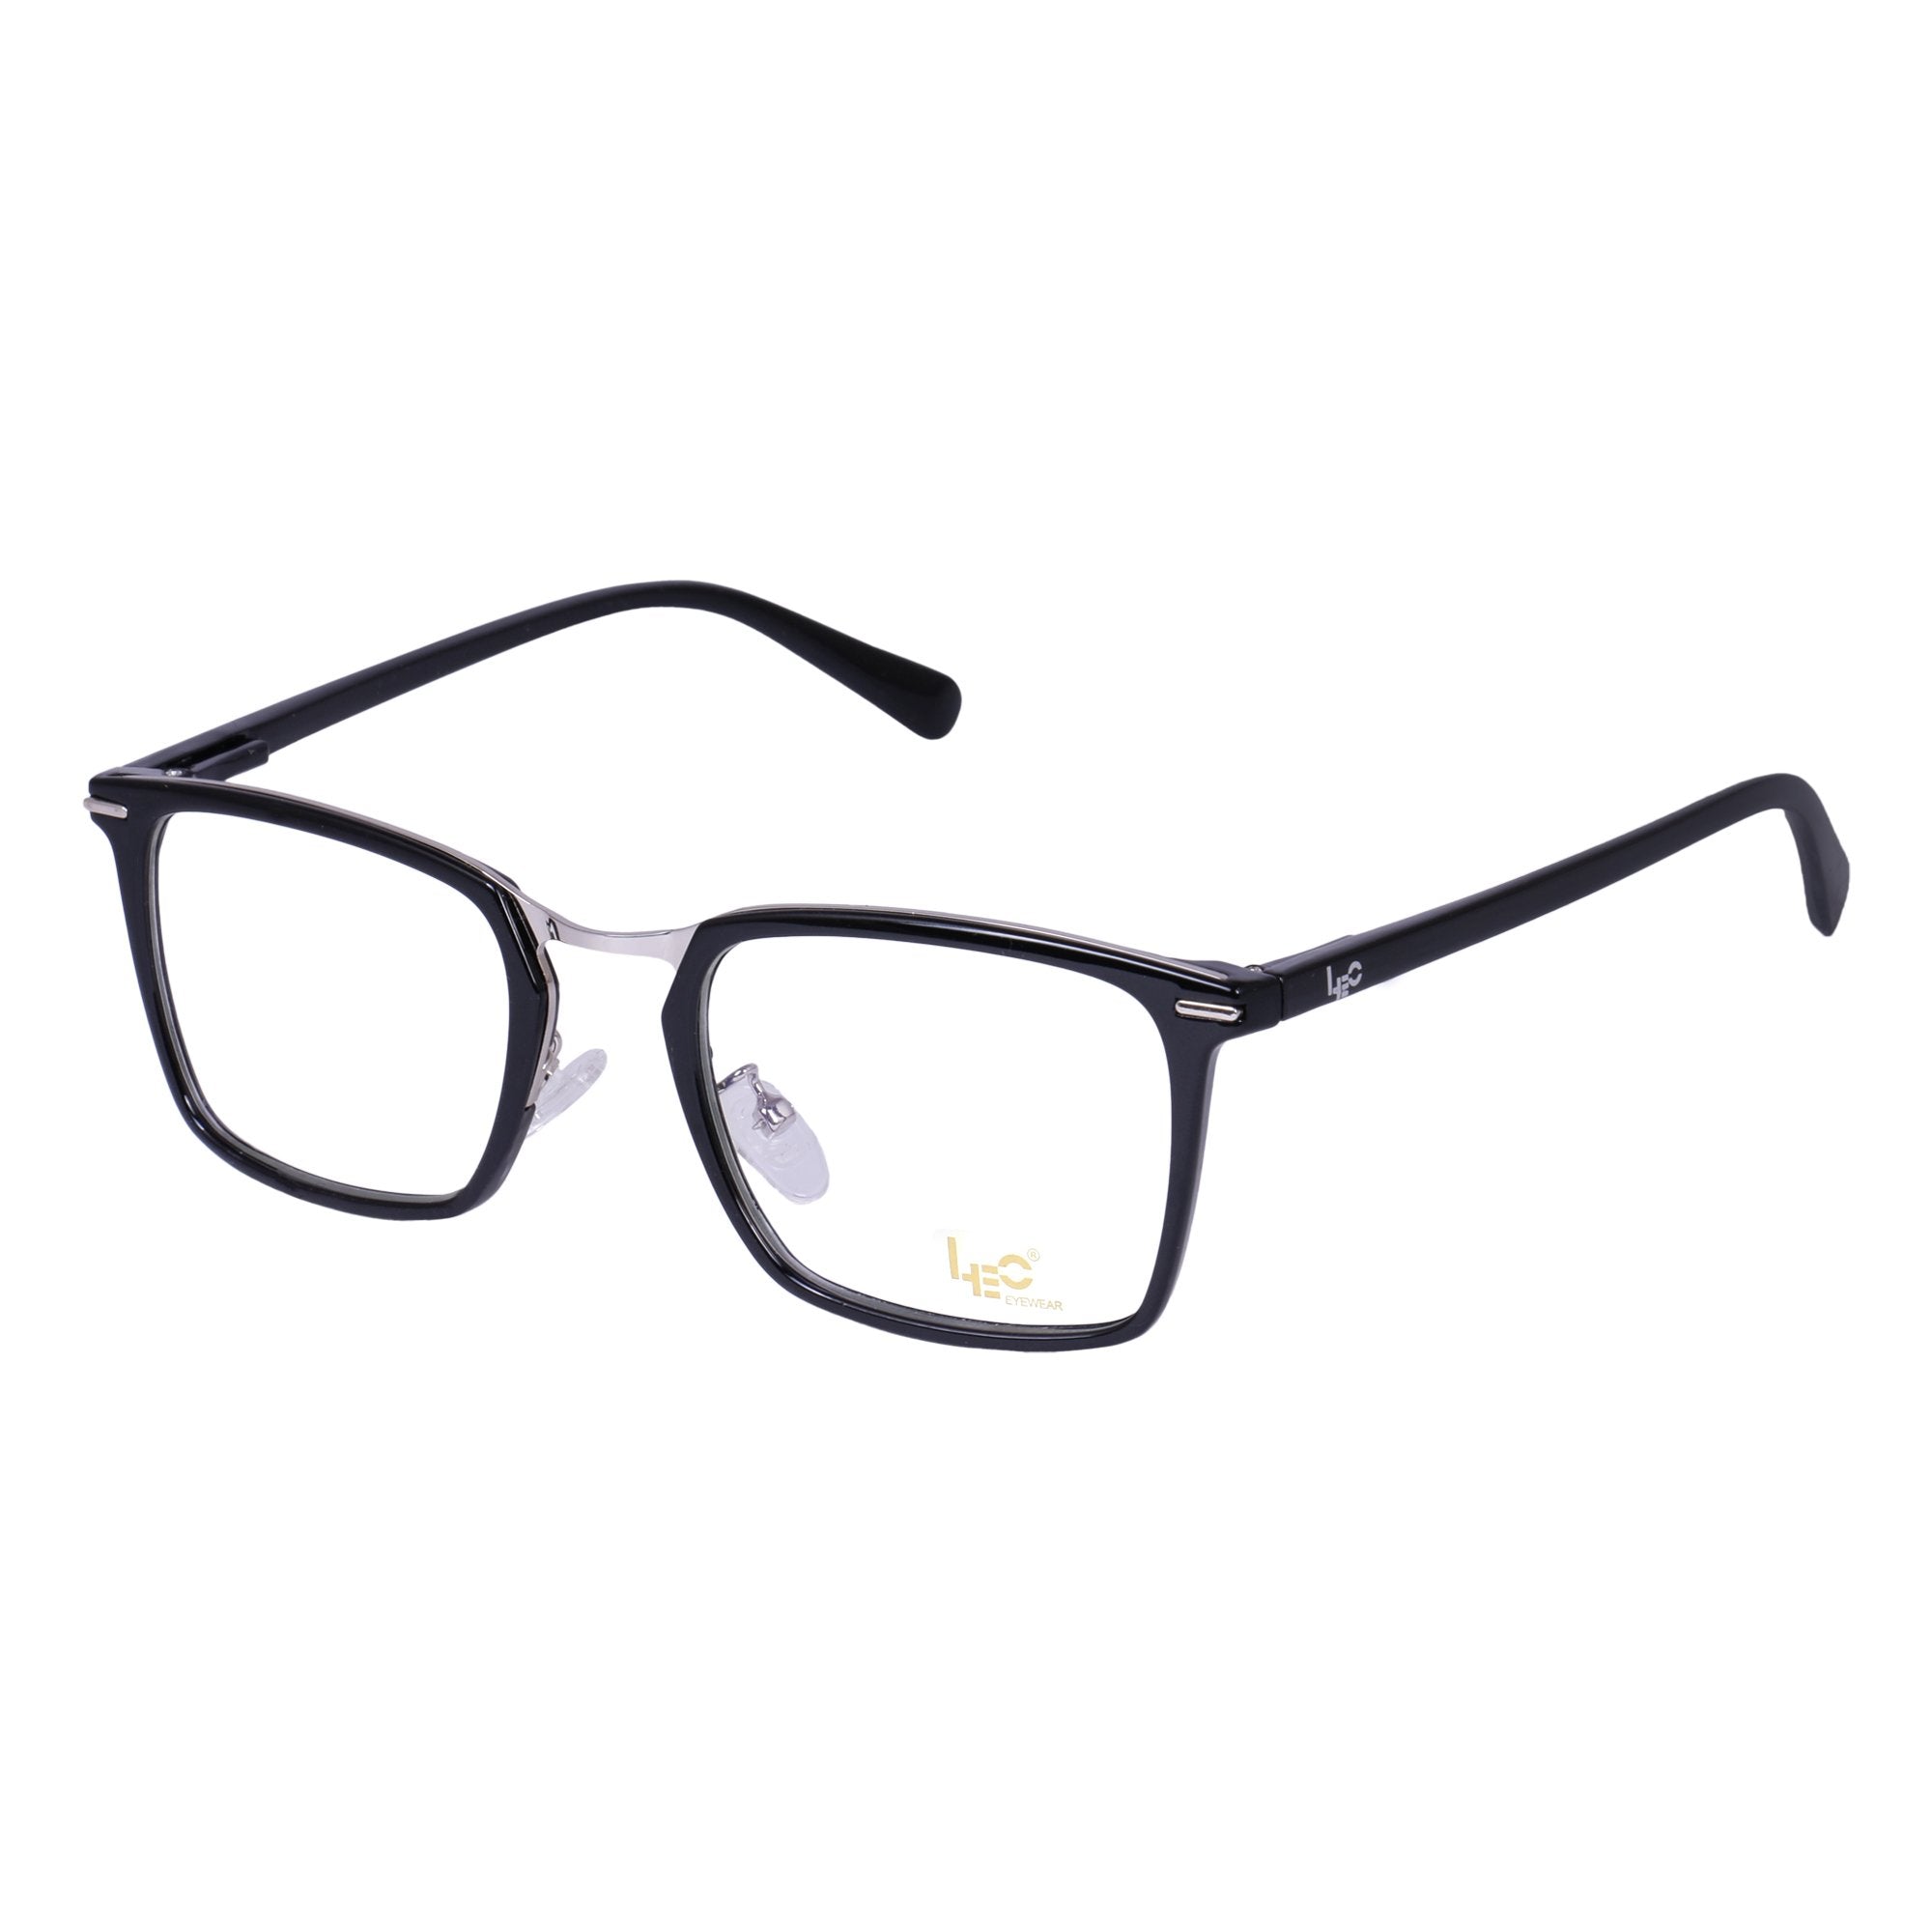 Black & Silver Square Rimmed Eyeglasses - L2755